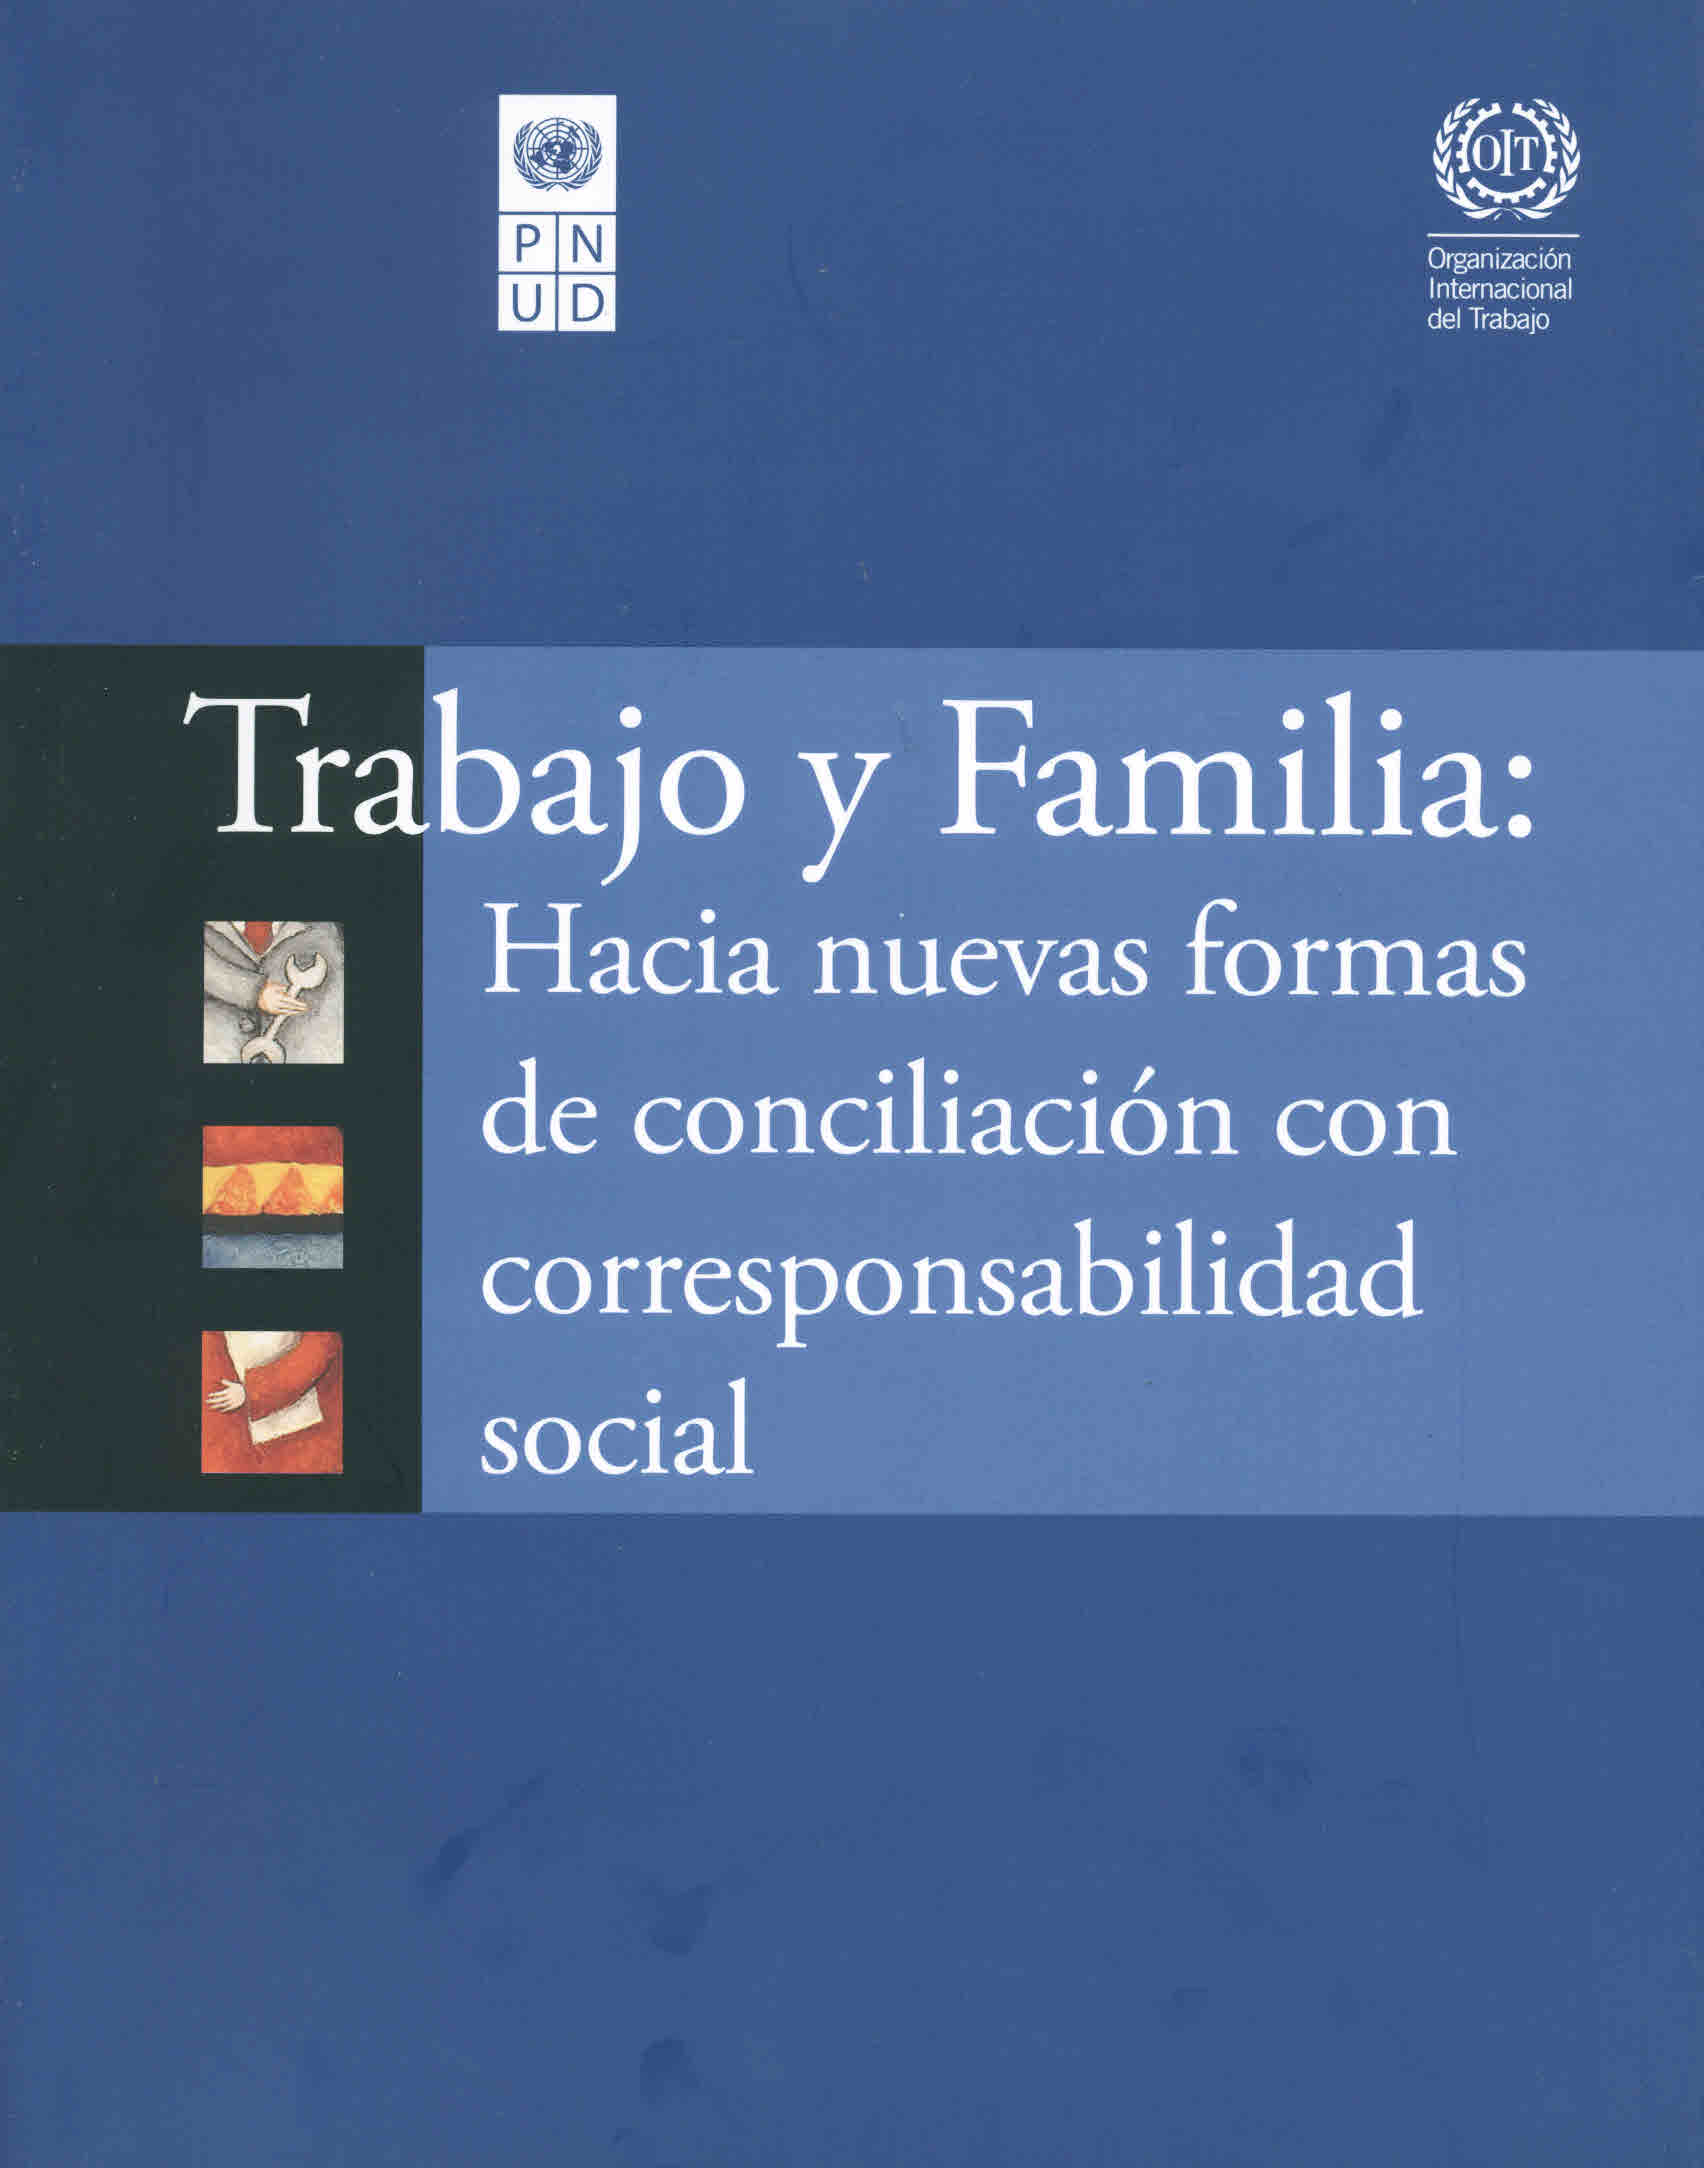 Trabajo y familia: Hacia nuevas formas de conciliación con corresponsabilidad social